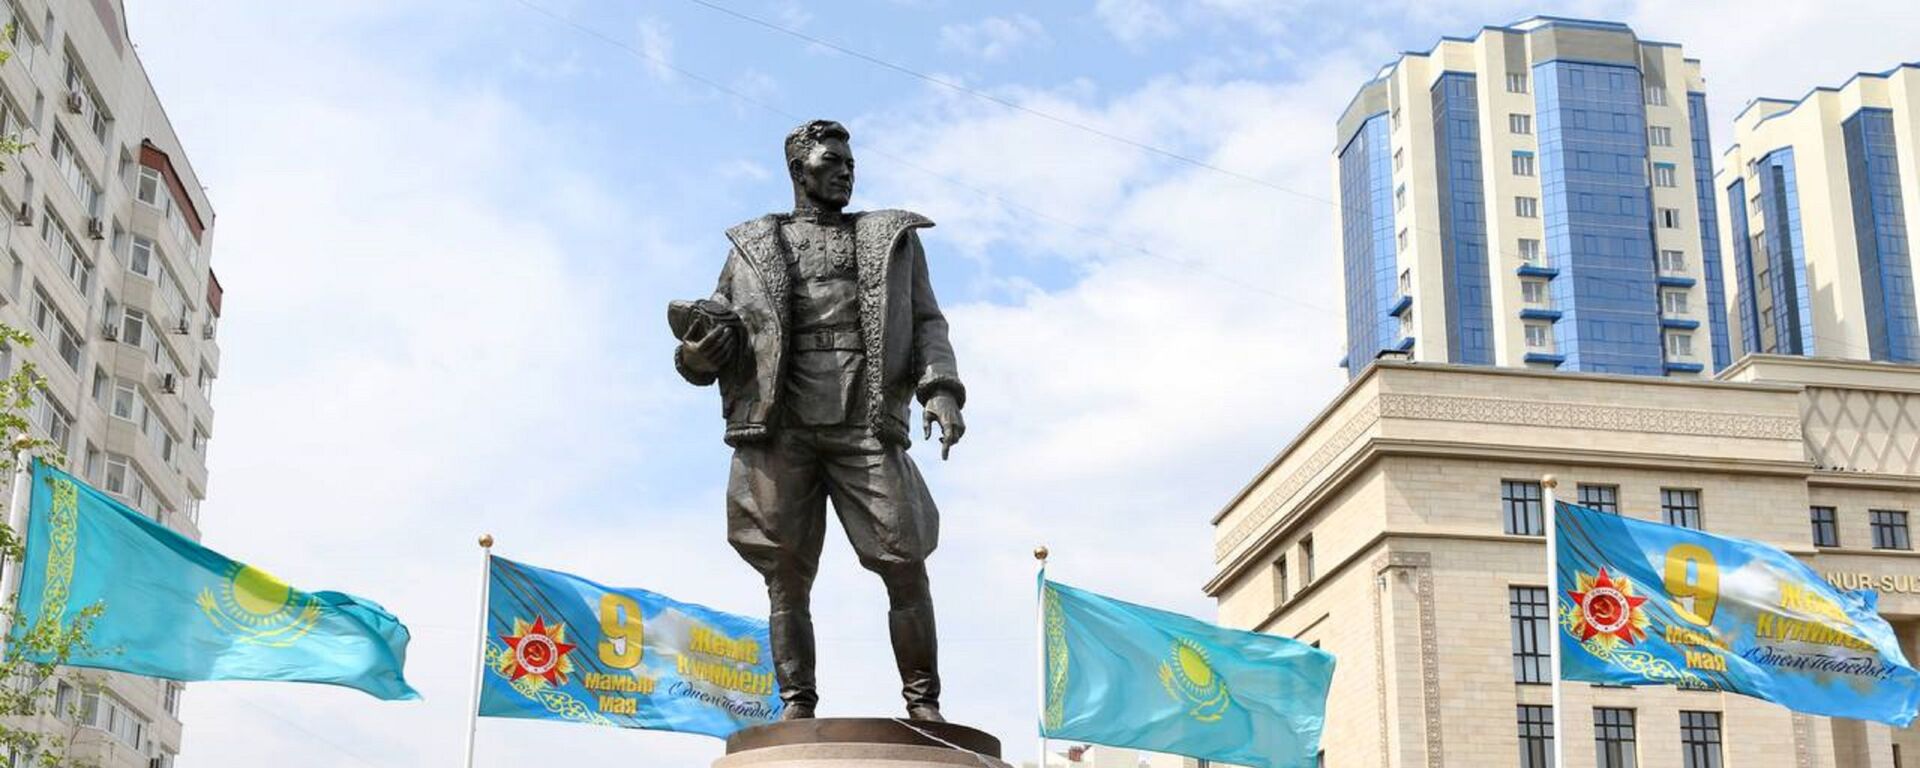 Памятник Талгату Бигельдинову открыли в Нур-Султане - Sputnik Казахстан, 1920, 08.05.2021